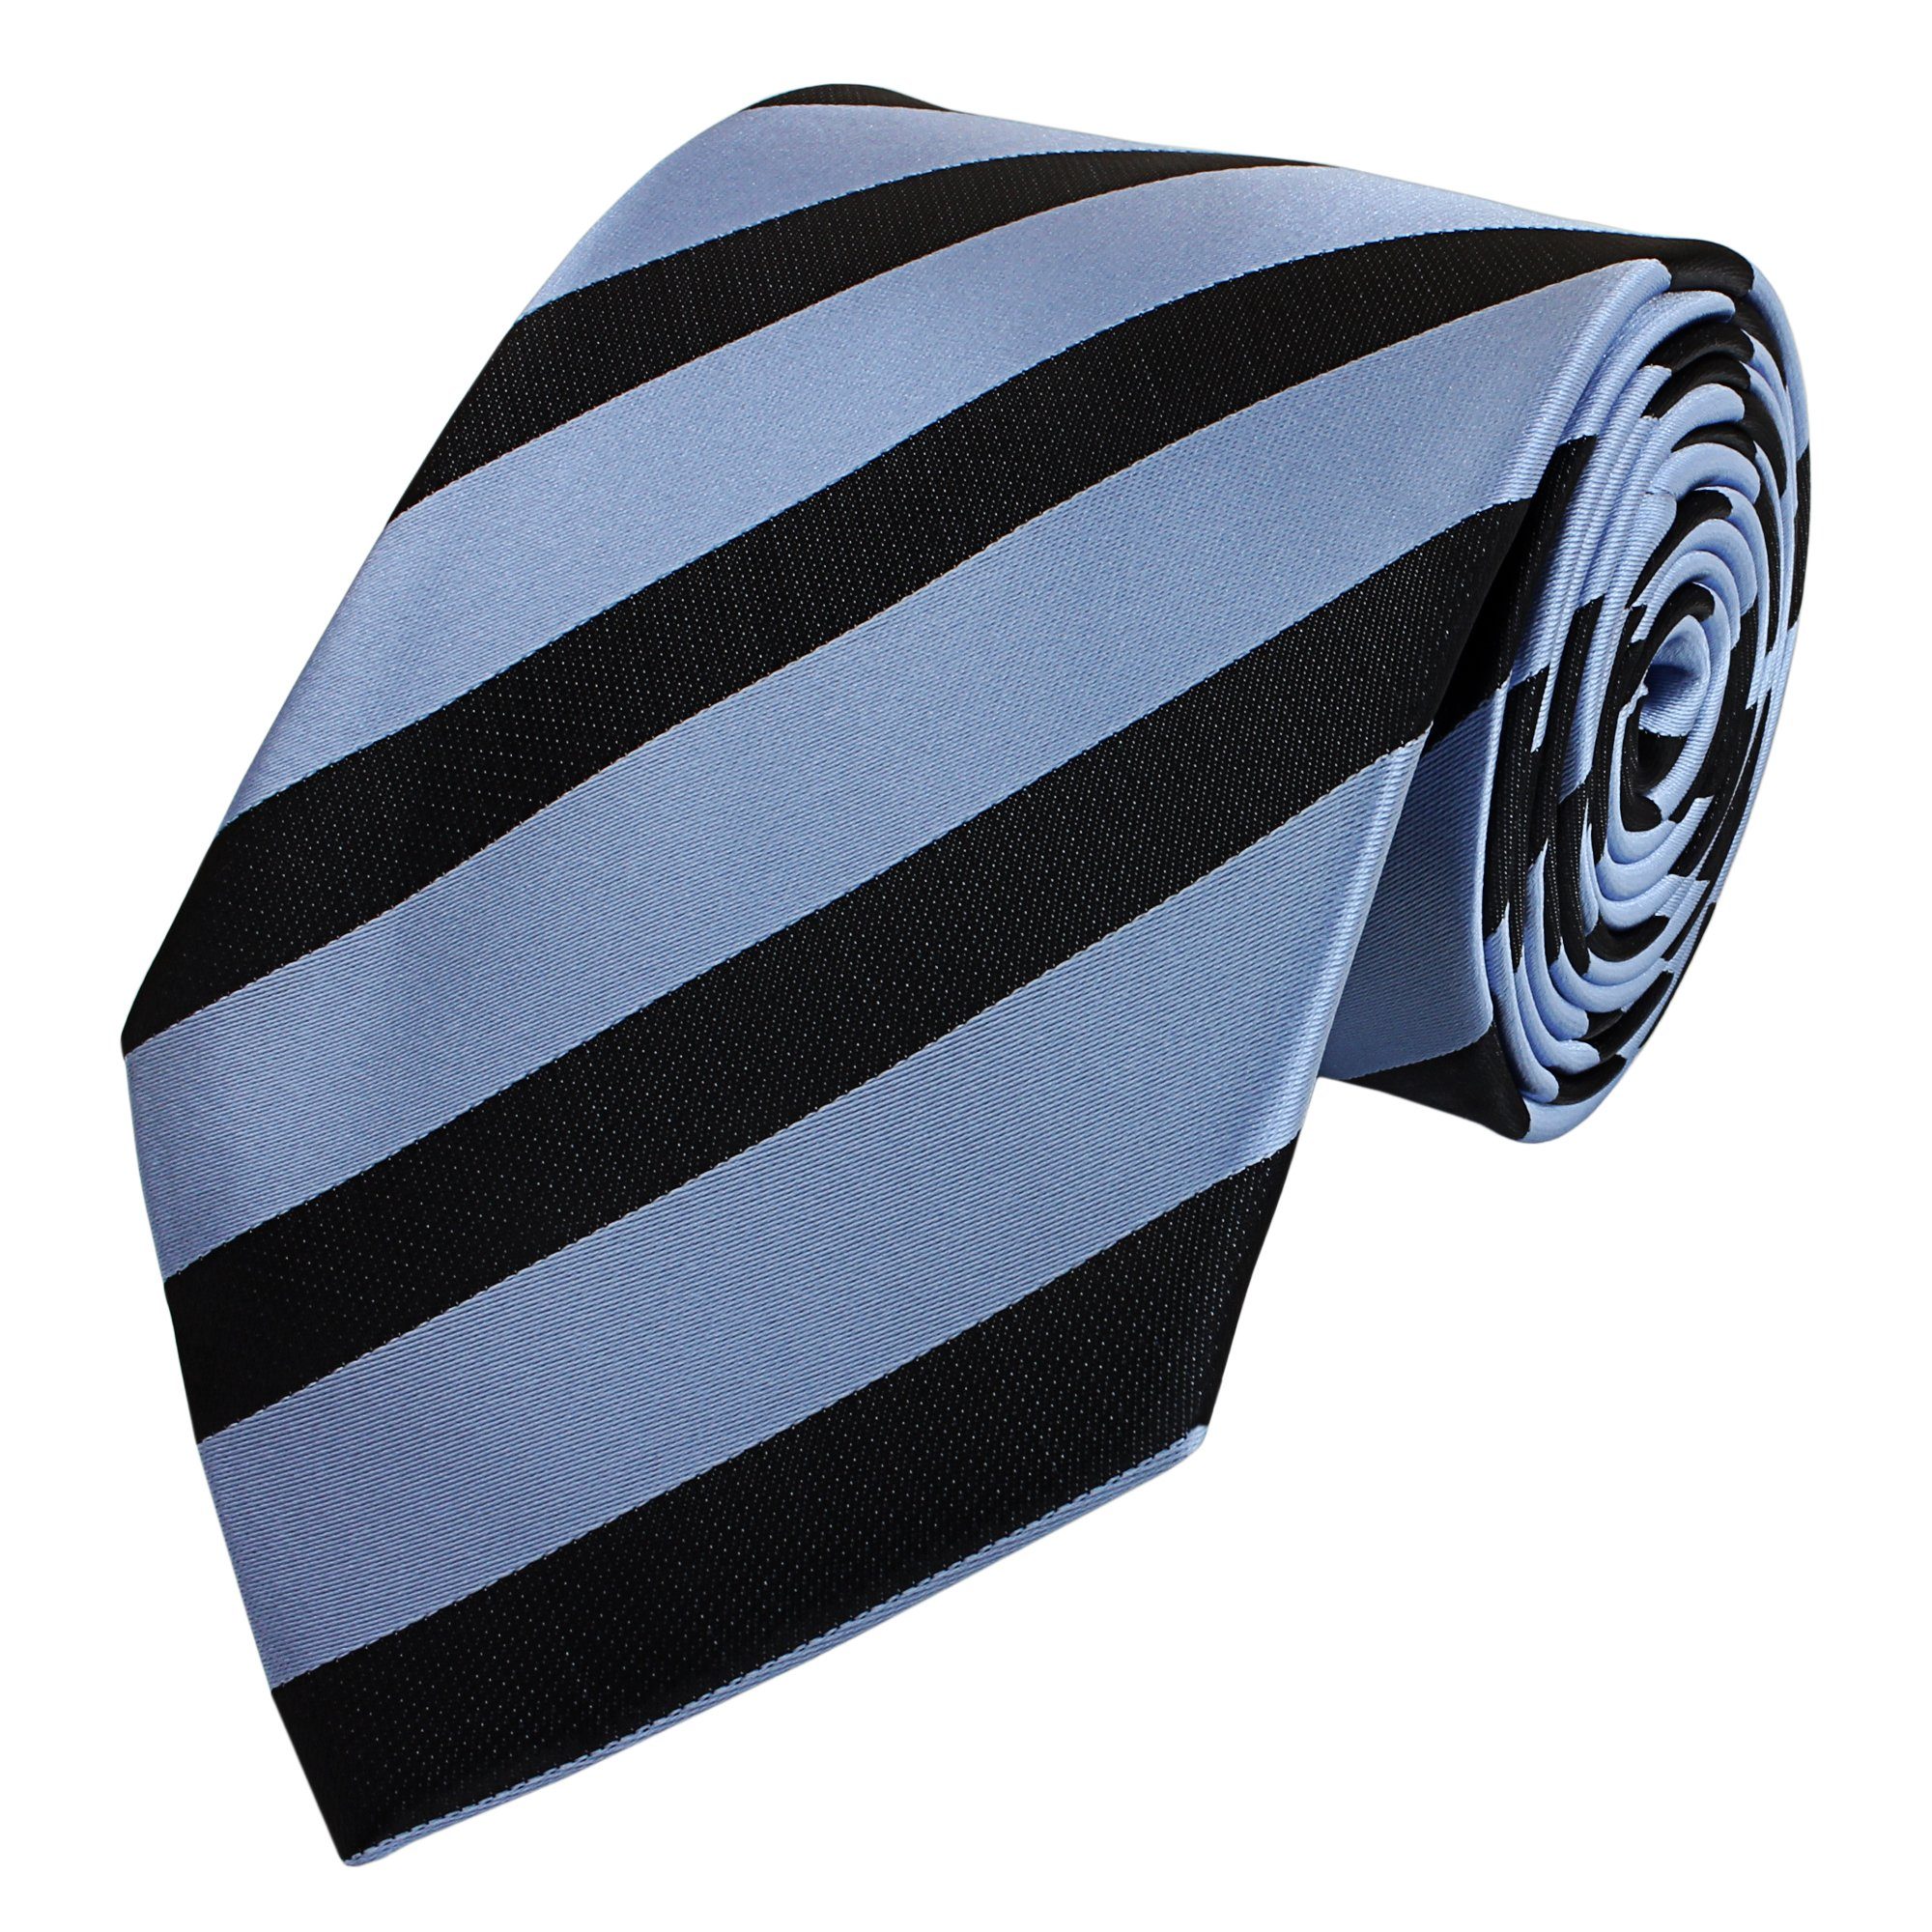 Fabio Farini Krawatte verschiedene in (ohne - Gestreift) Krawatten Streifen Schlips Hellblau/Schwarz Breit Box, klassische (8cm), 8cm Herren